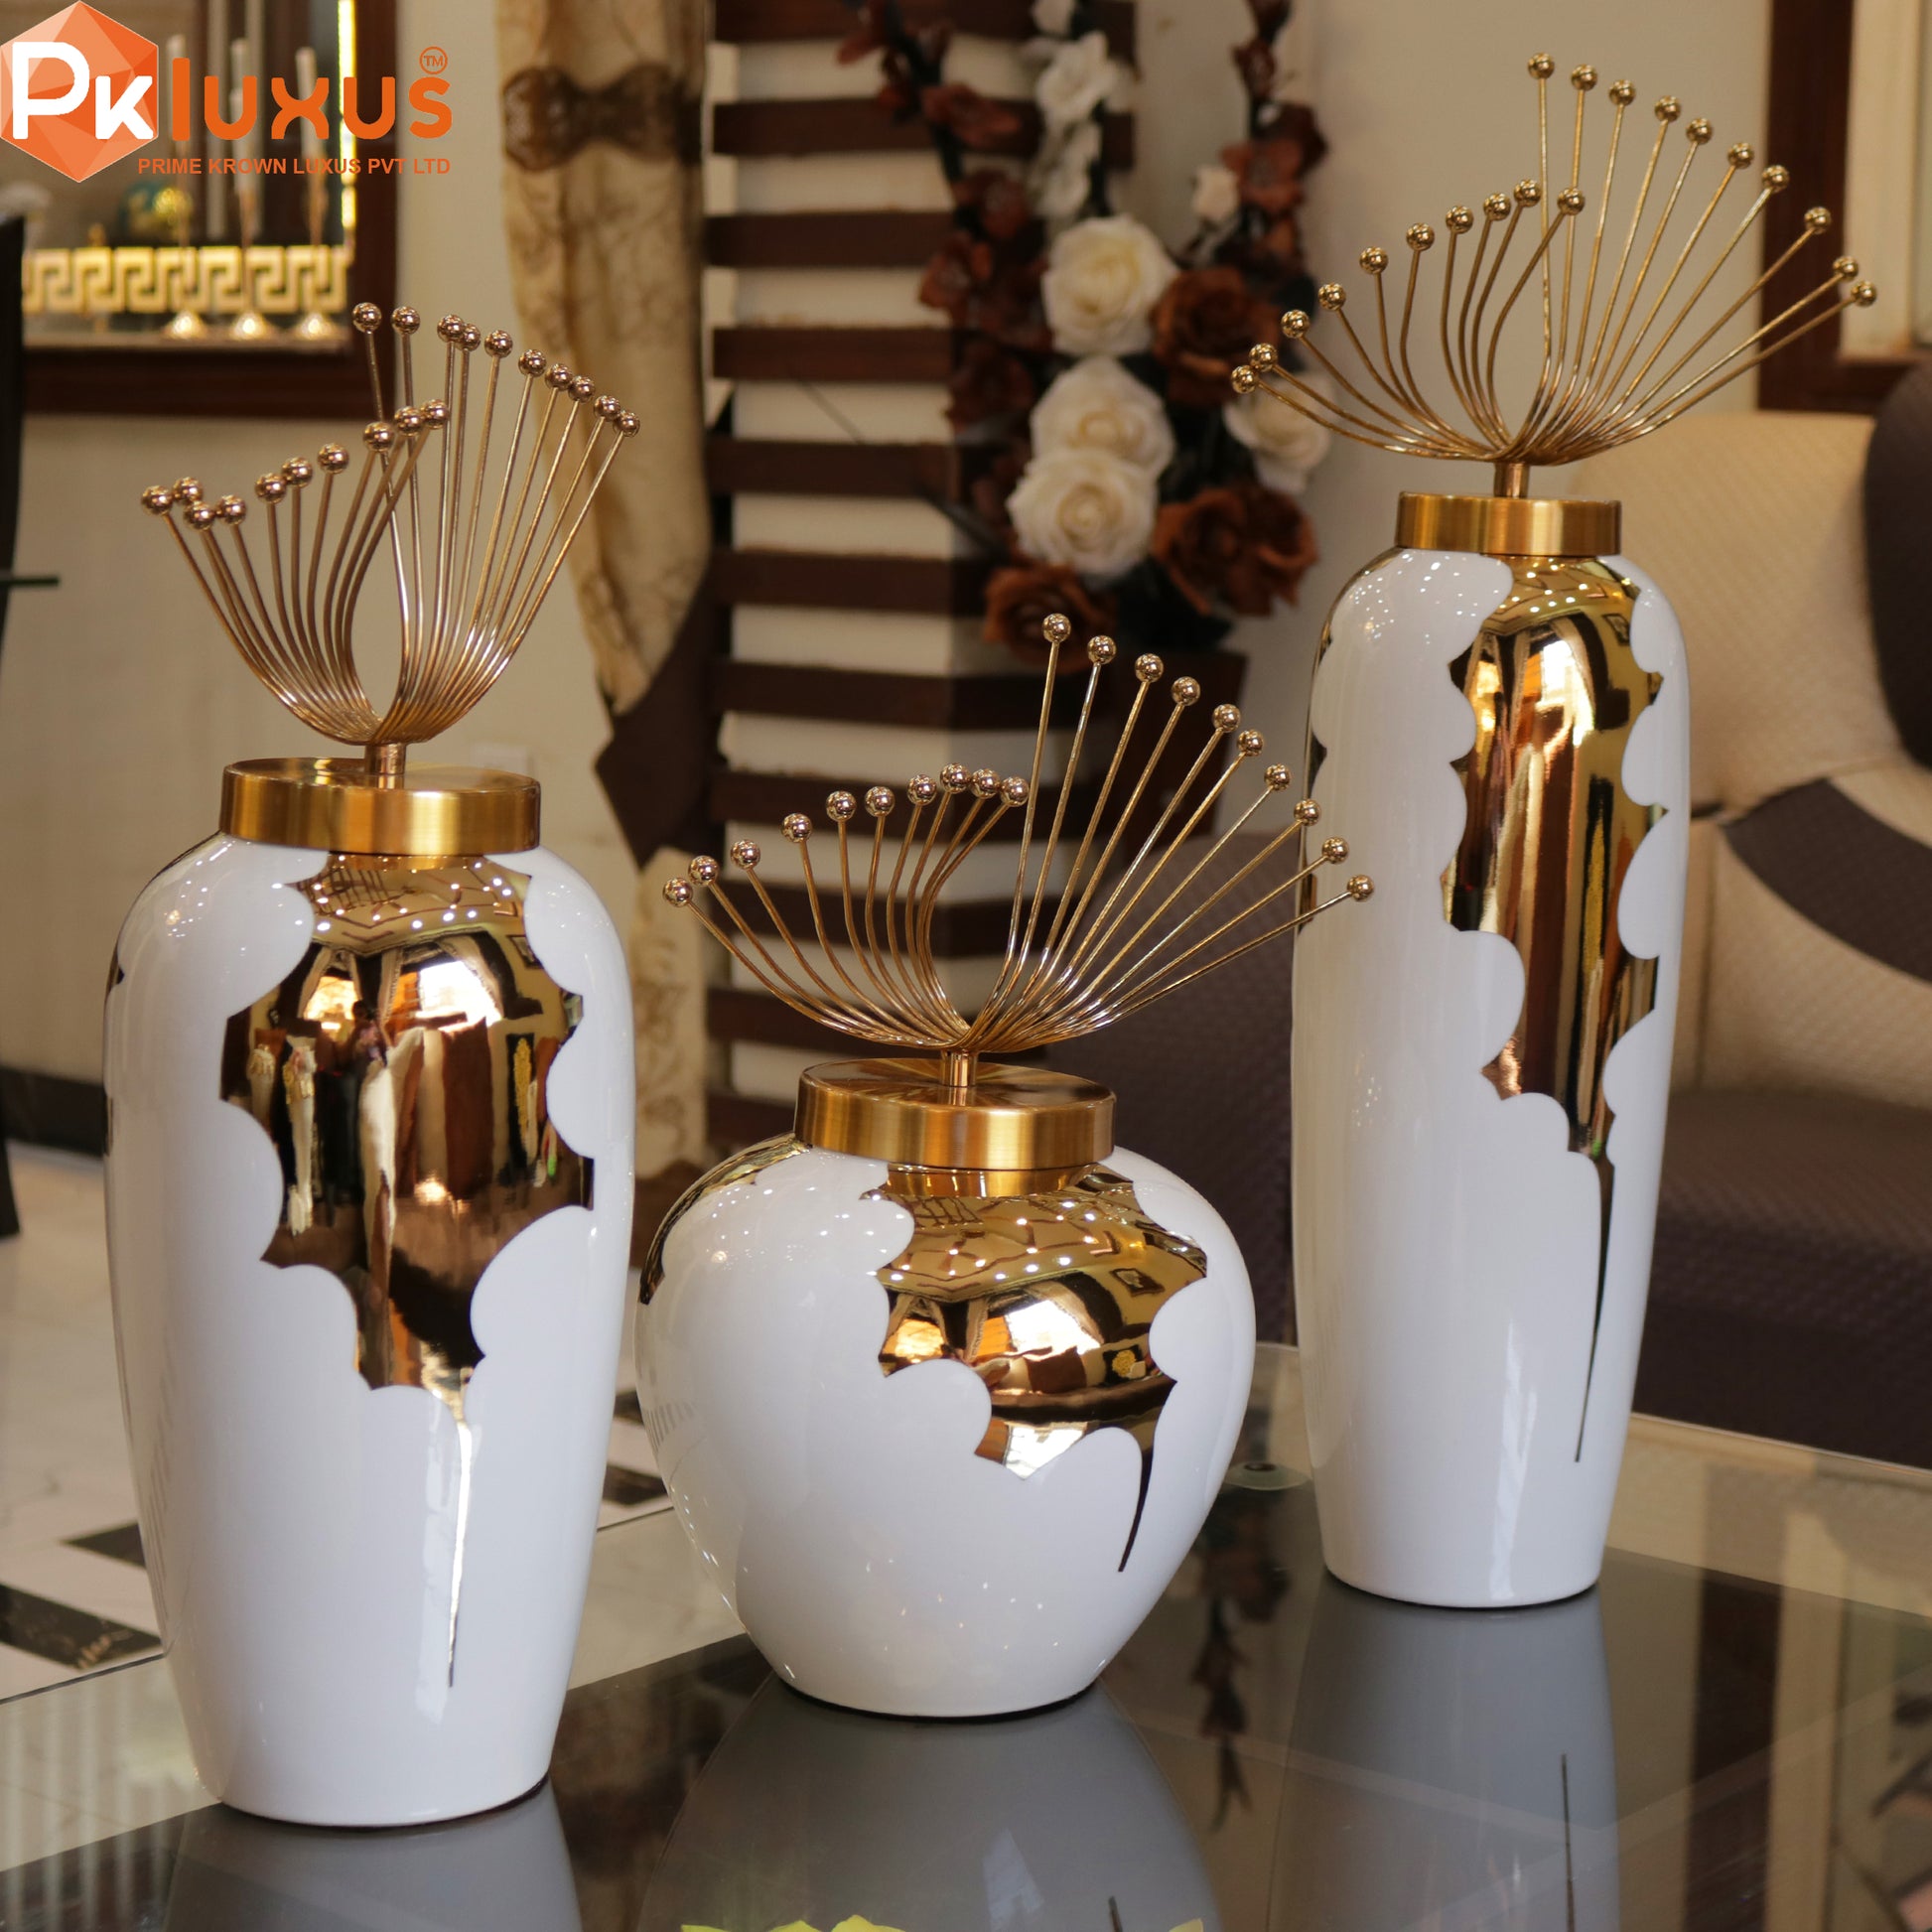 Set of 3 Luxury White & Gold European Vases By PK LUXUS™ - PK LUXUS